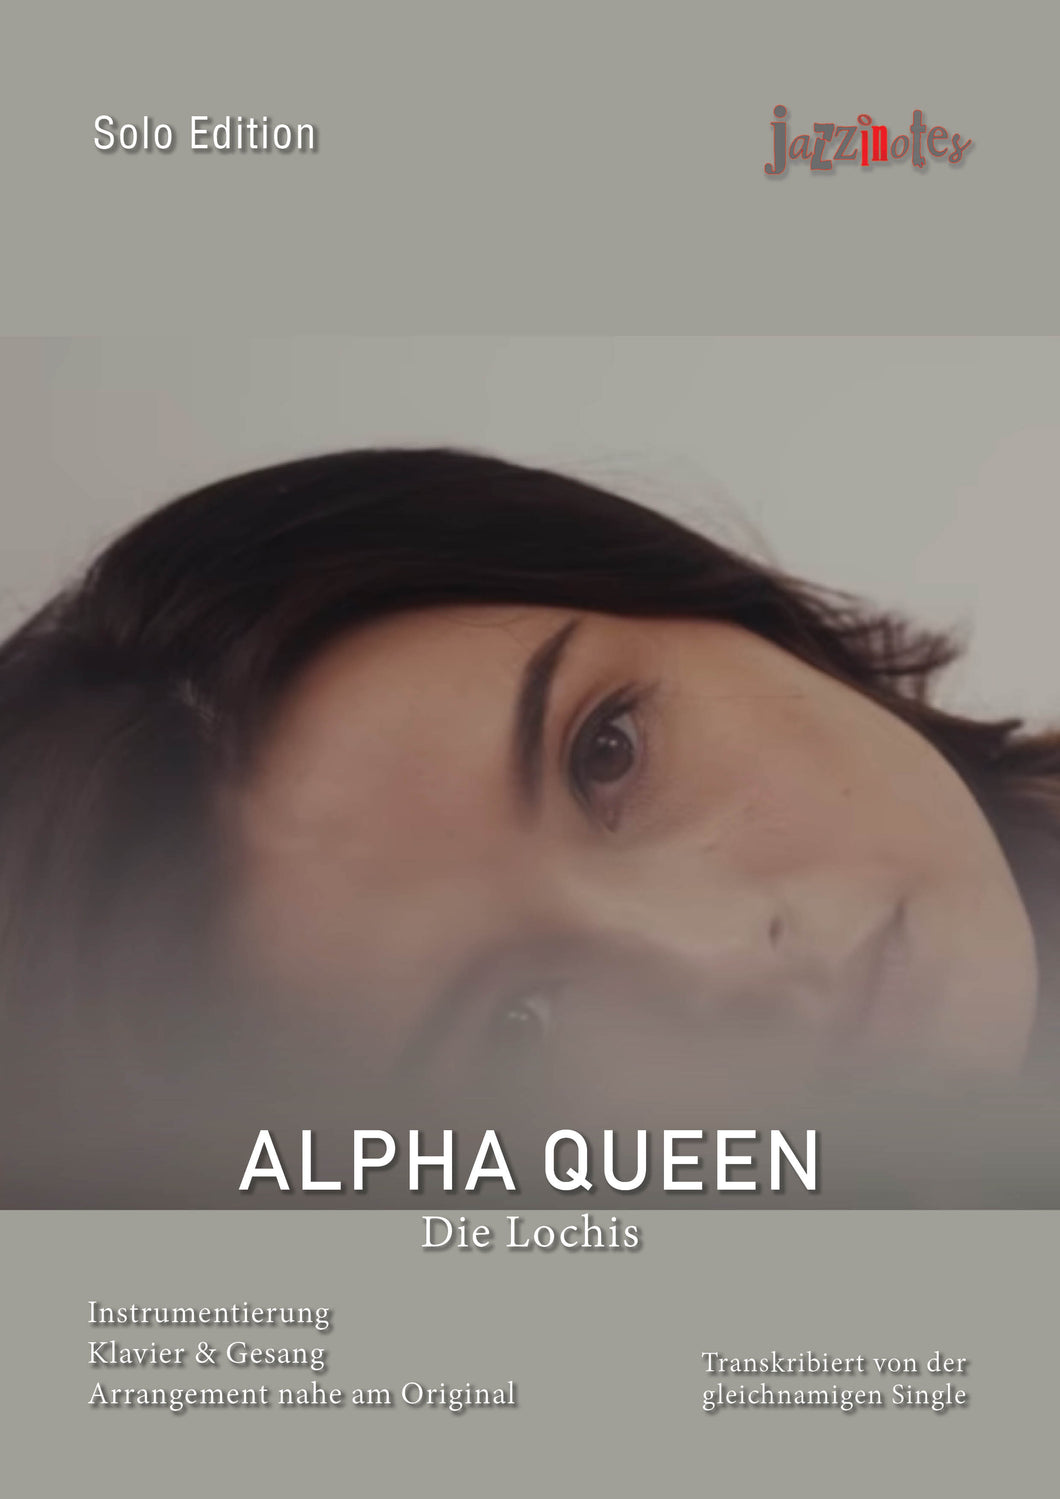 Lochis, Die: Alpha Queen - Sheet Music Download